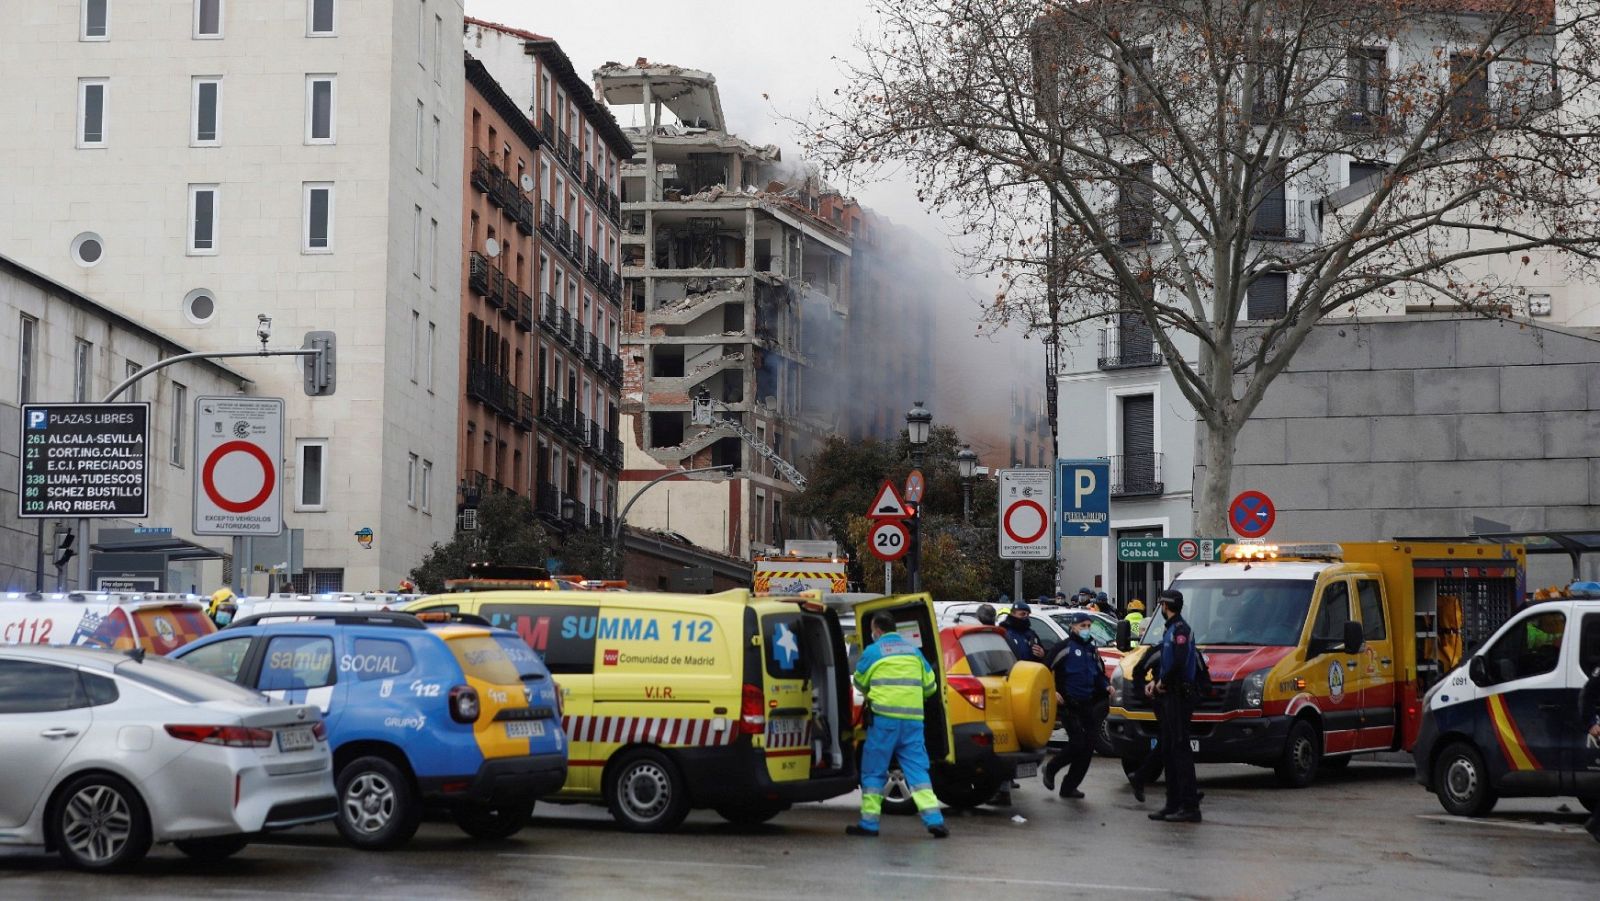 La explosión en Madrid no deja heridos en la residencia cercana: "Están todos bien"